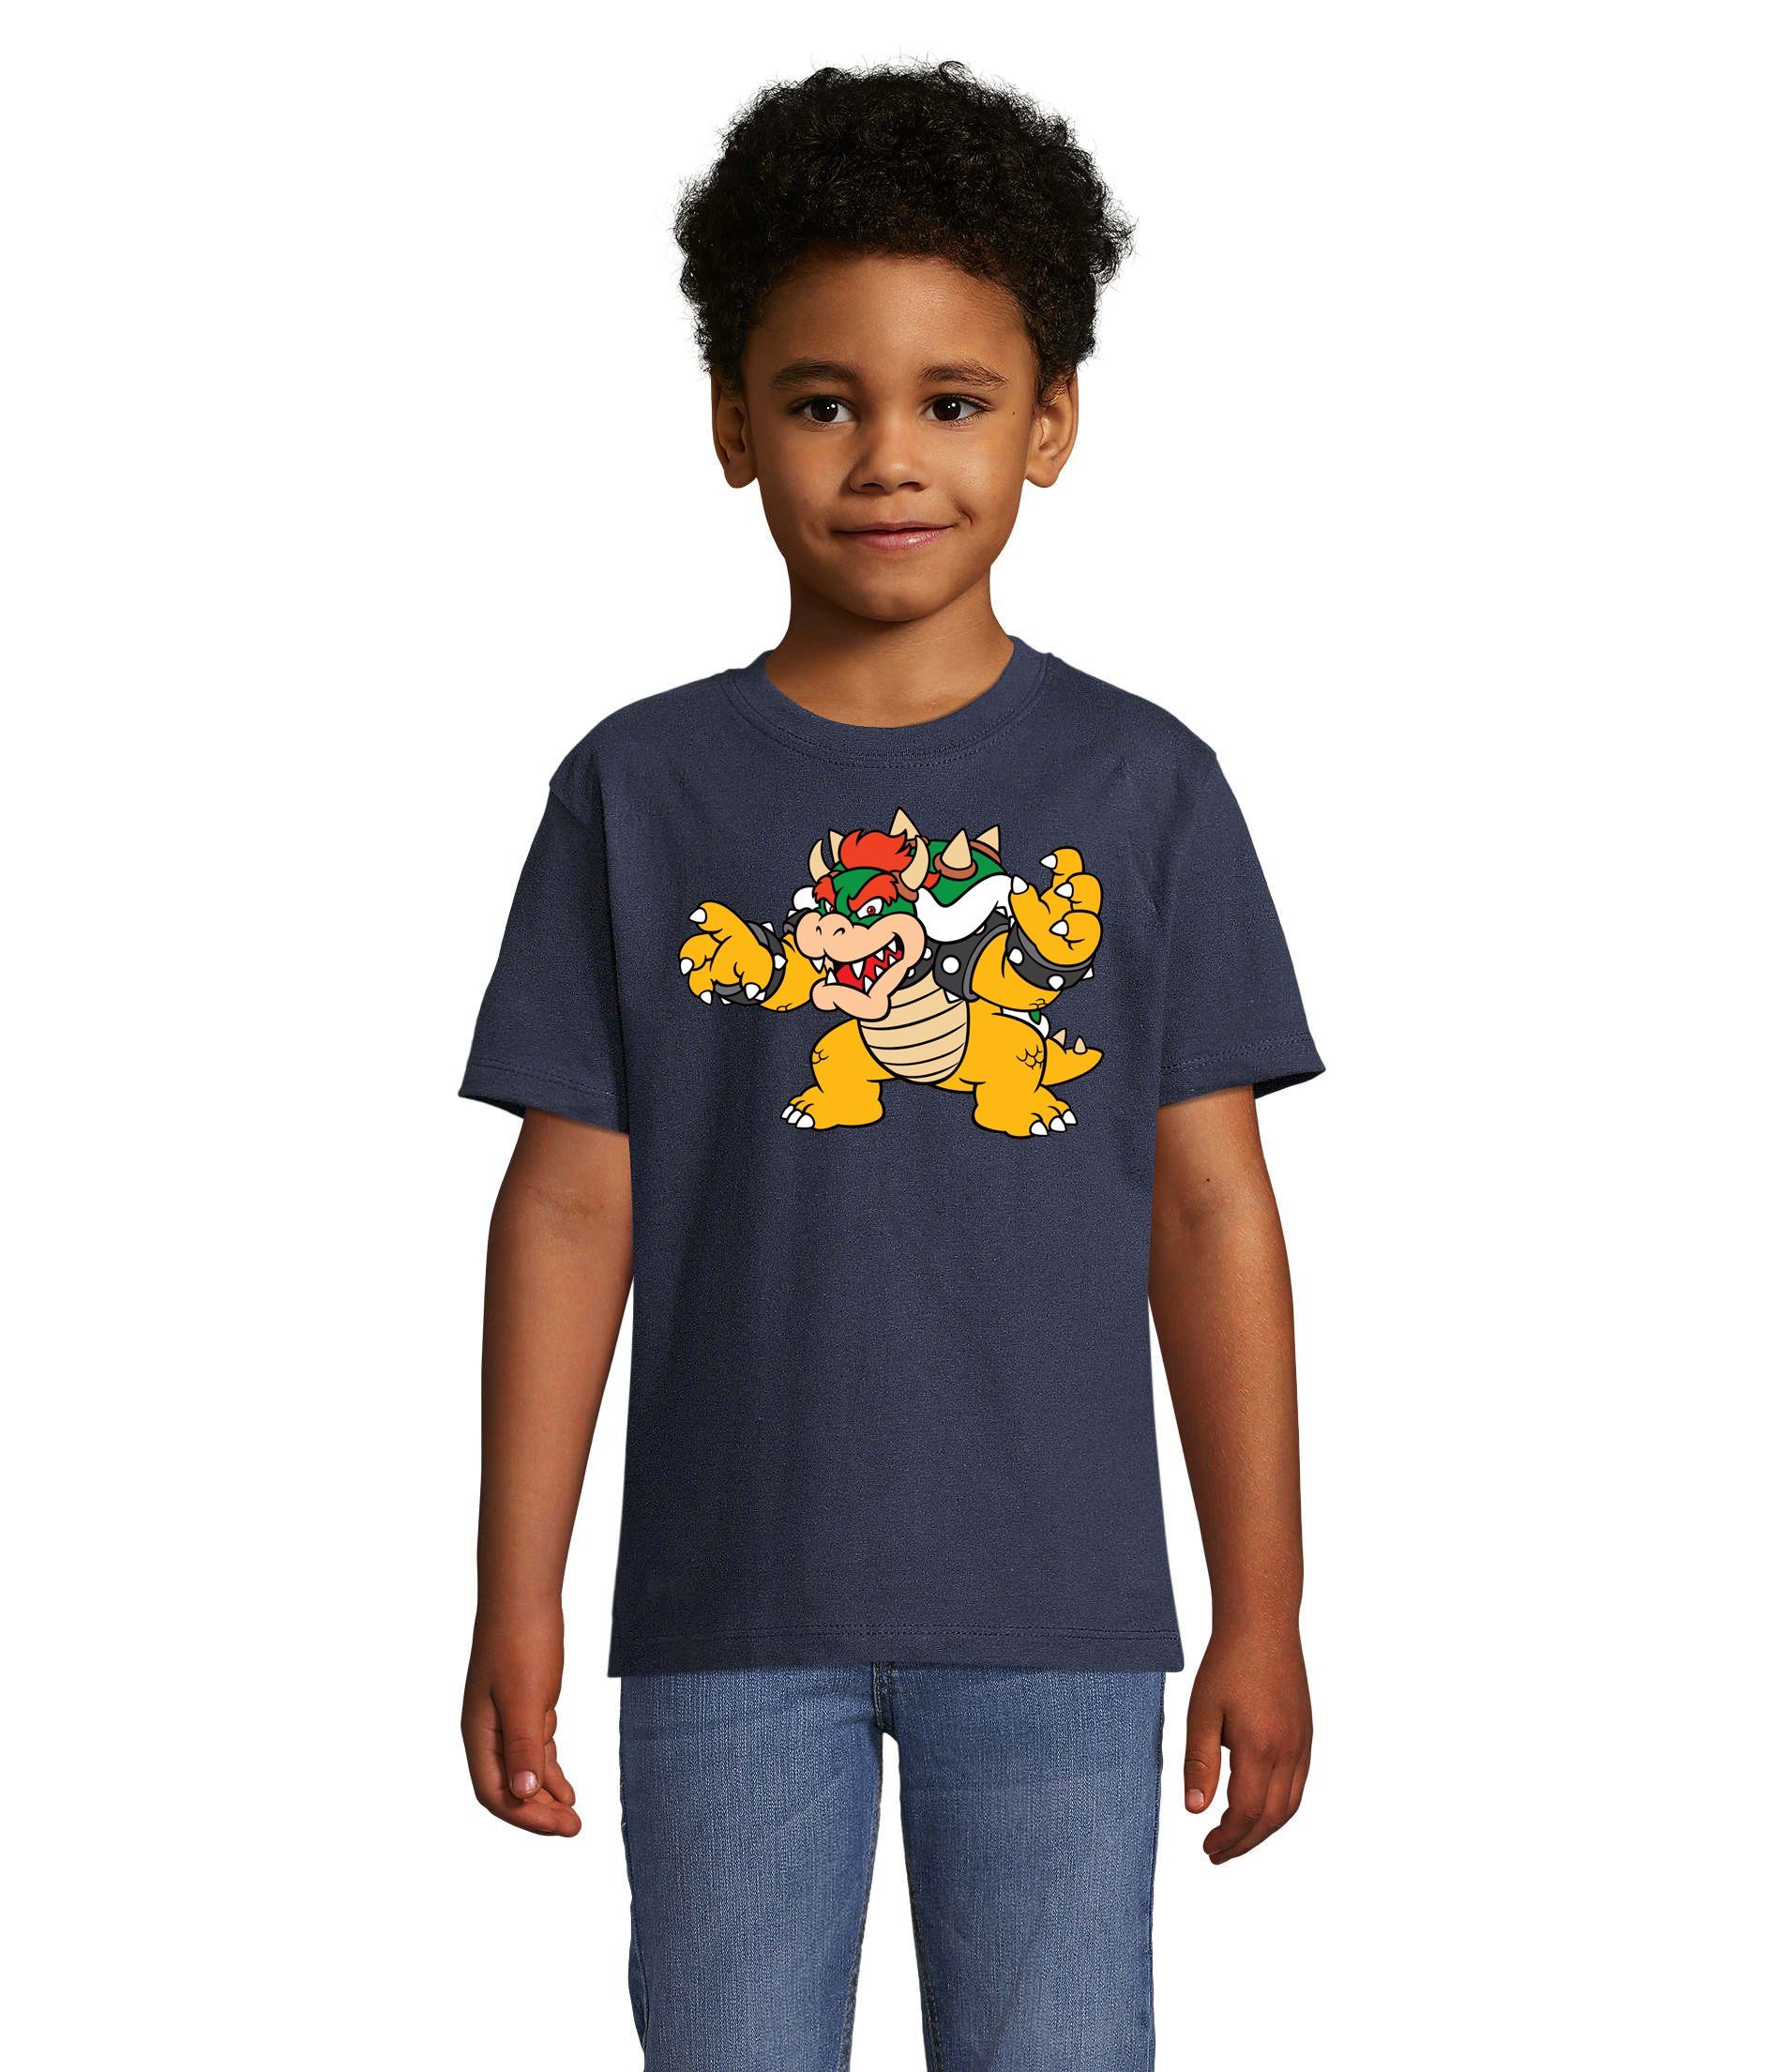 Blondie Kinder Konsole Luigi Gamer Mario Navyblau Bowser Brownie Game & T-Shirt Nintendo Yoshi